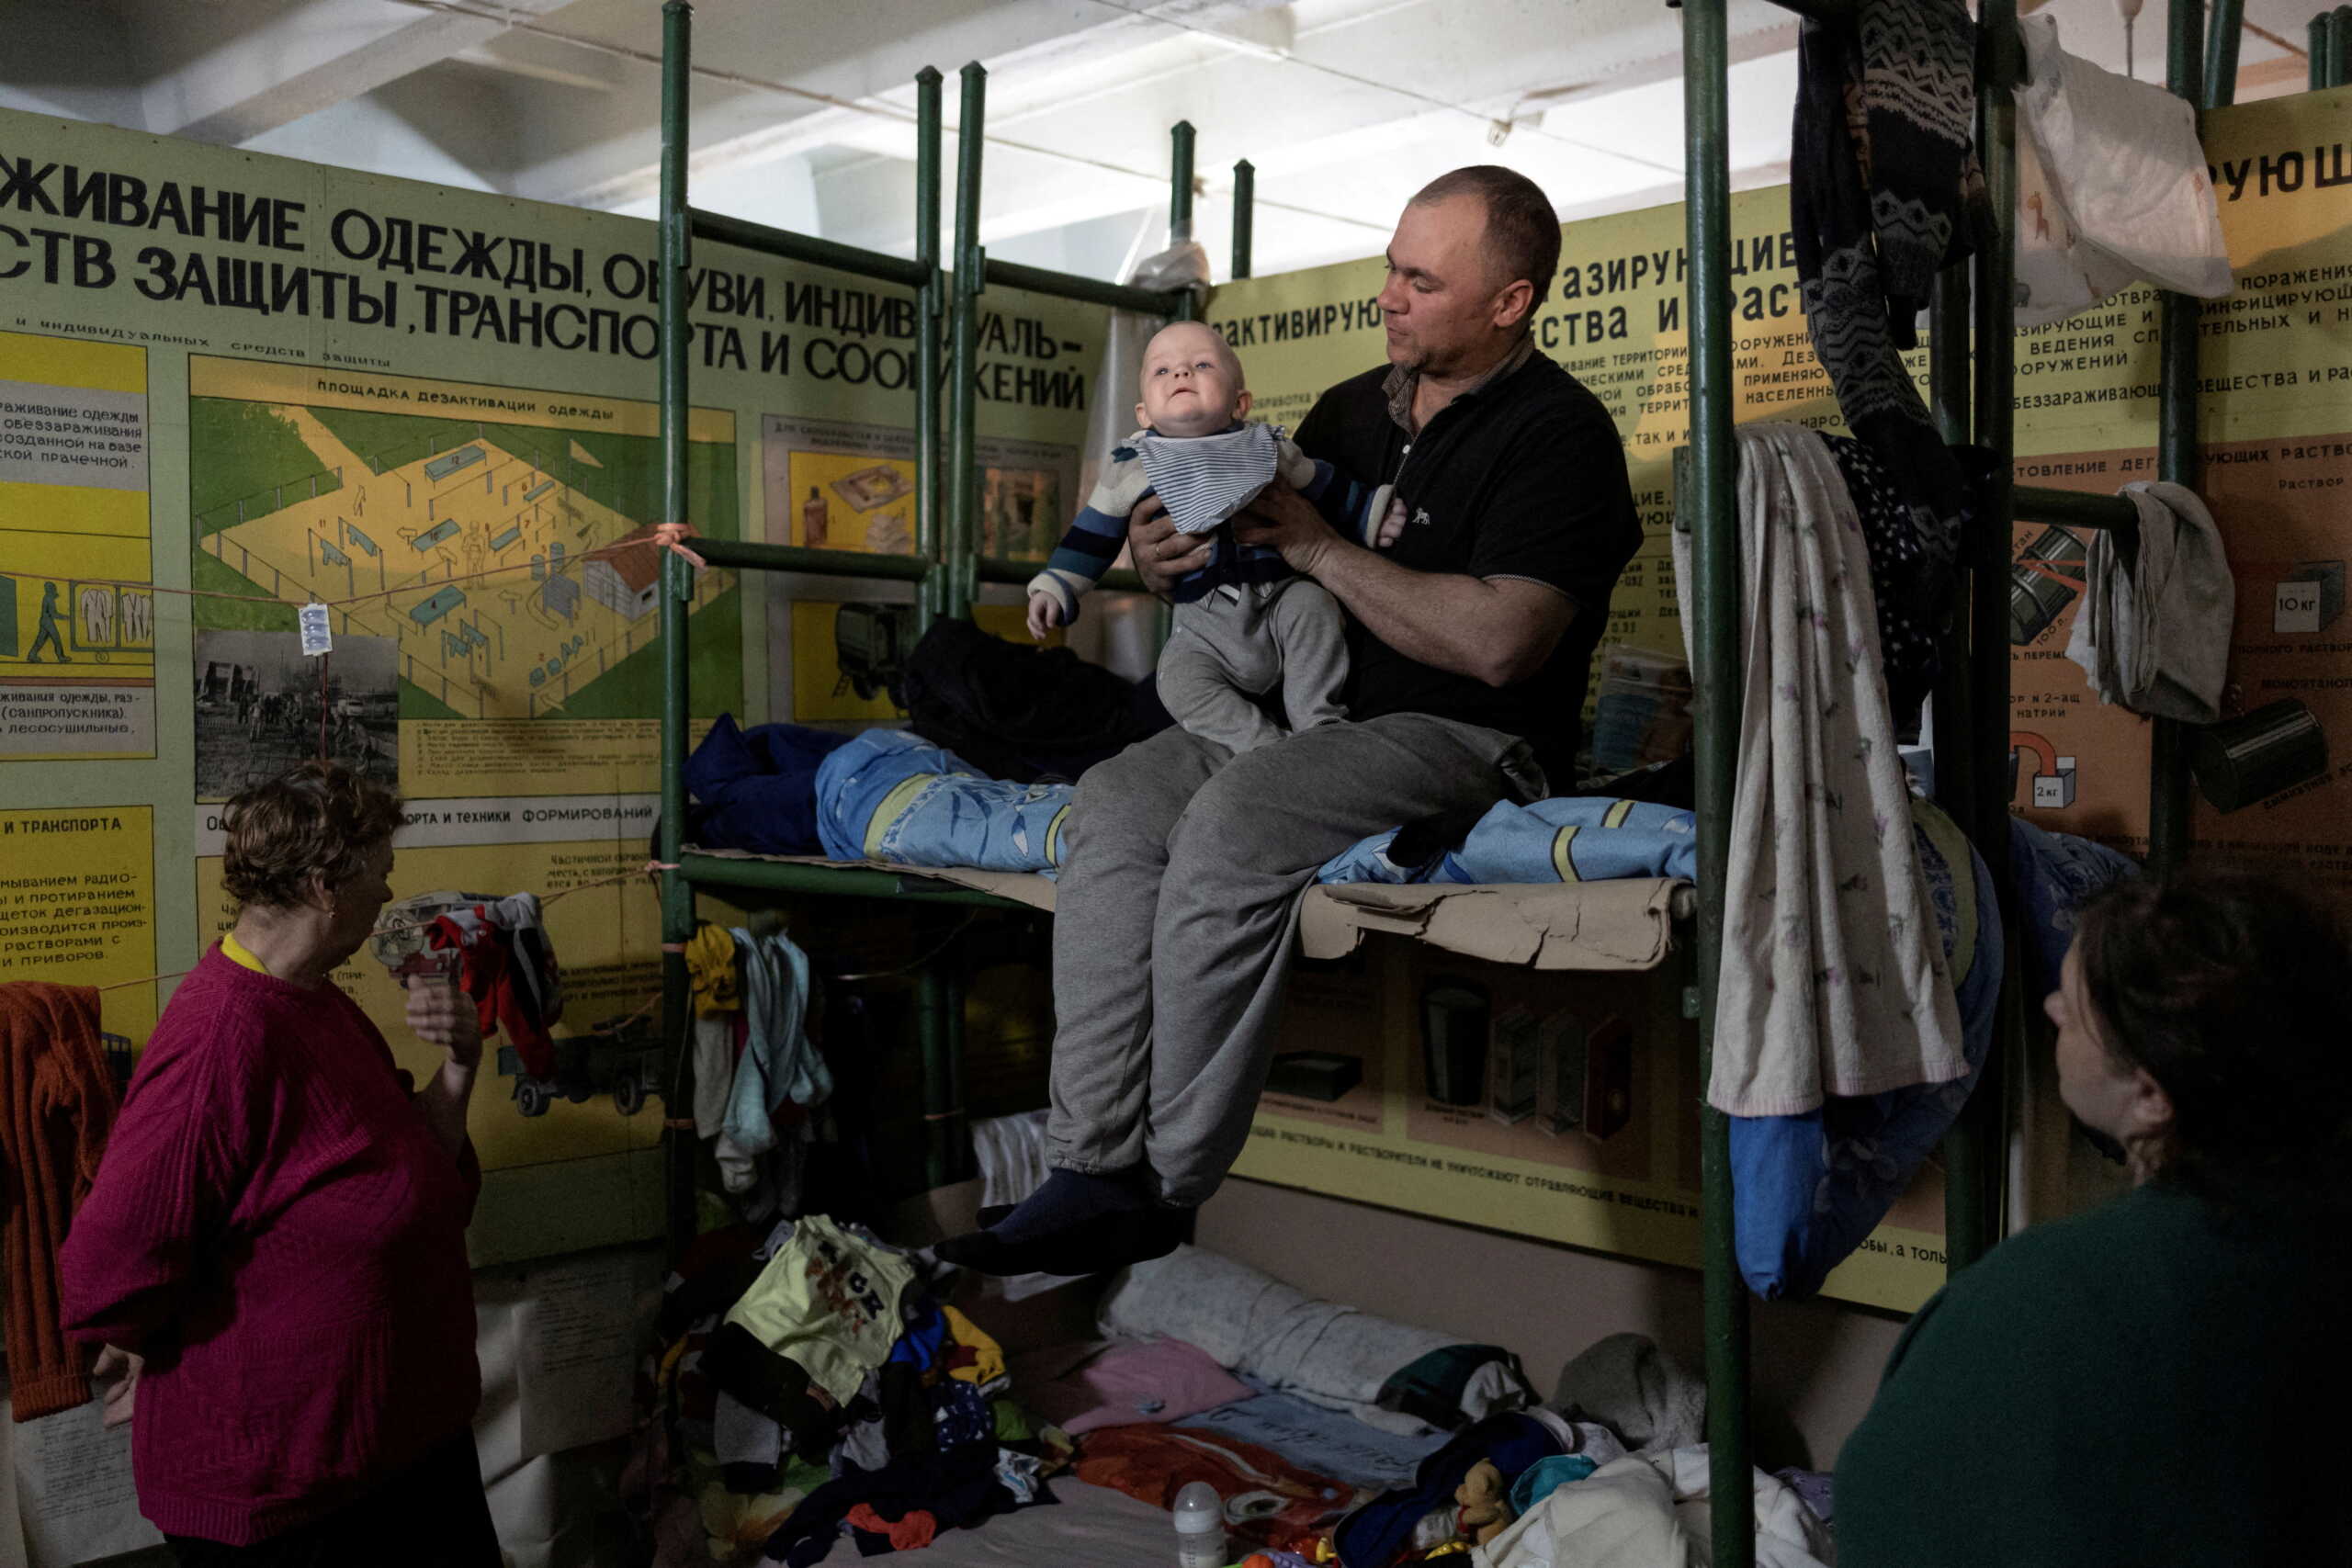 Ουκρανία: 100 μέρες πολέμου – Τουλάχιστον 800 άμαχοι έχουν βρει καταφύγιο στο Σεβεροντονιέτσκ